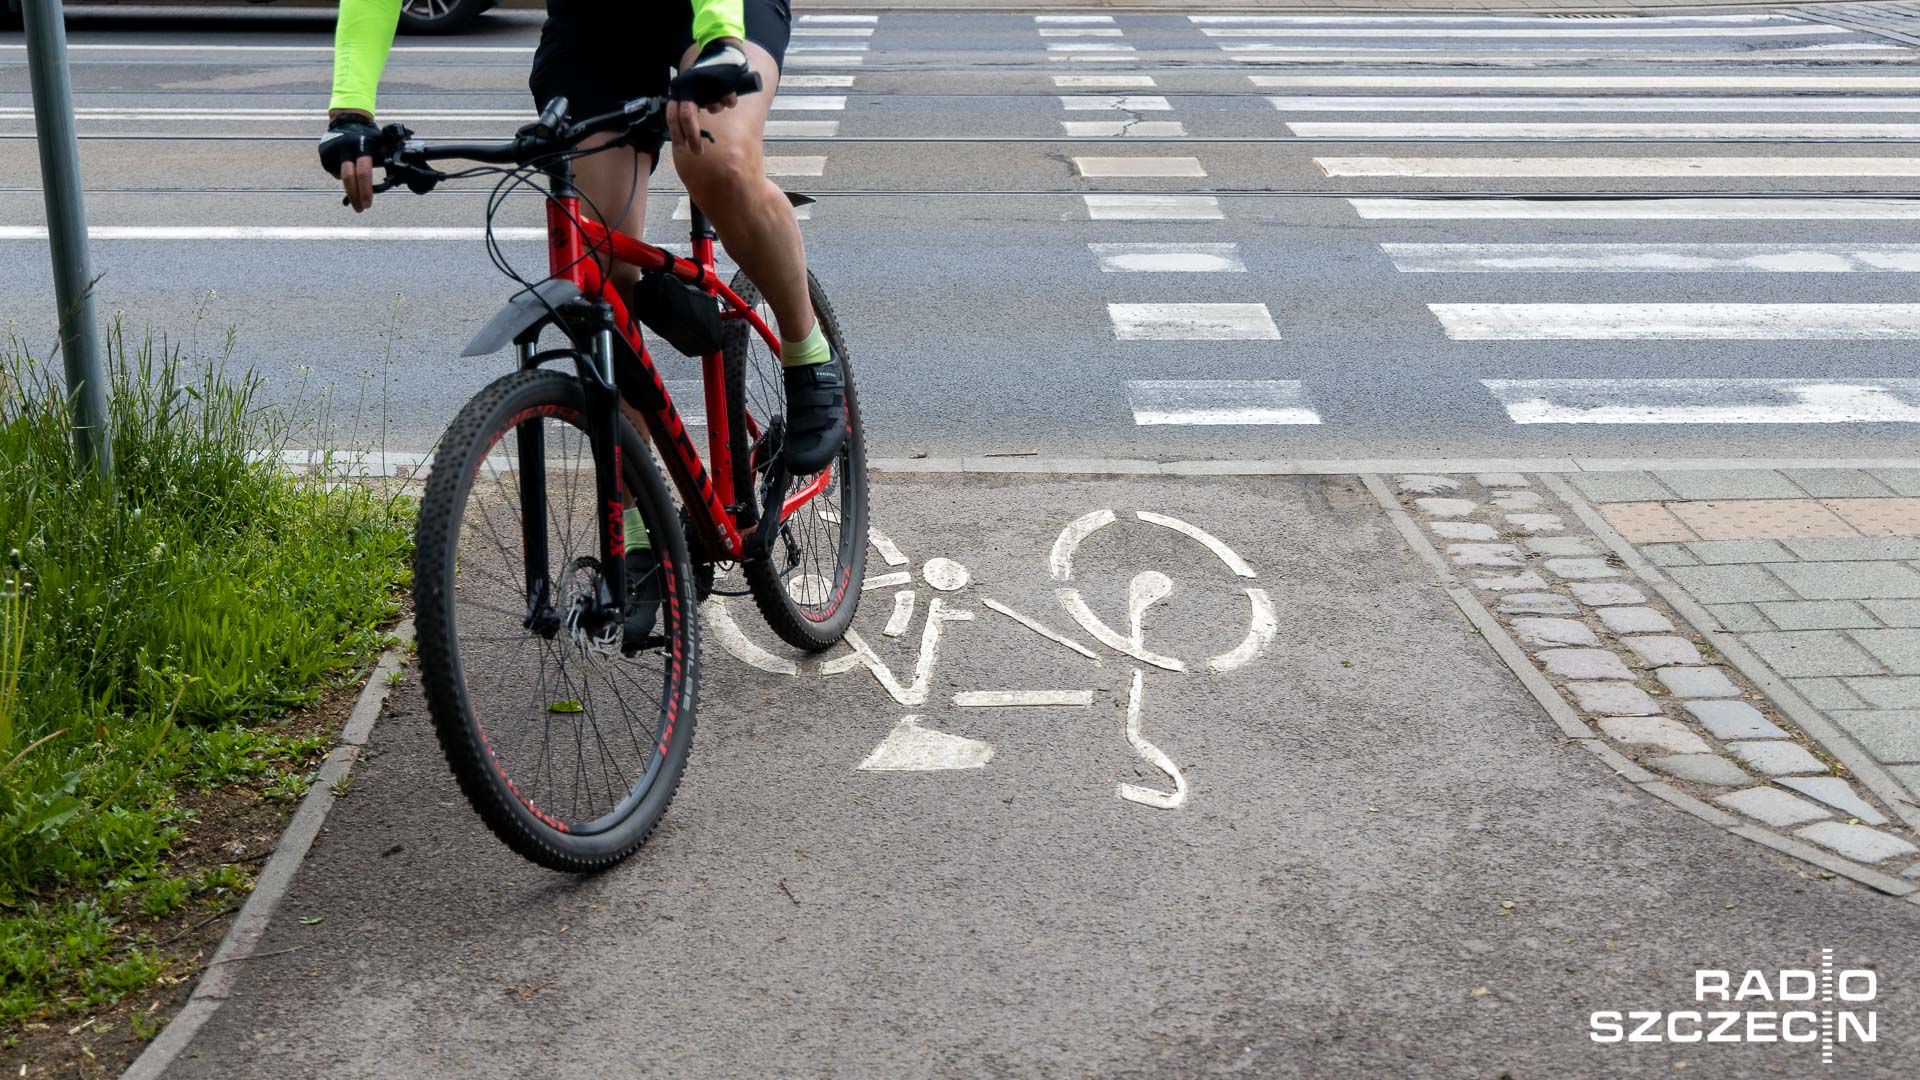 W gminie Dziwnów będzie można wybrać się na przejażdżkę rowerową razem z kolarskimi medalistami olimpijskimi - Tadeuszem Mytnikiem i Mieczysławem Nowickim.